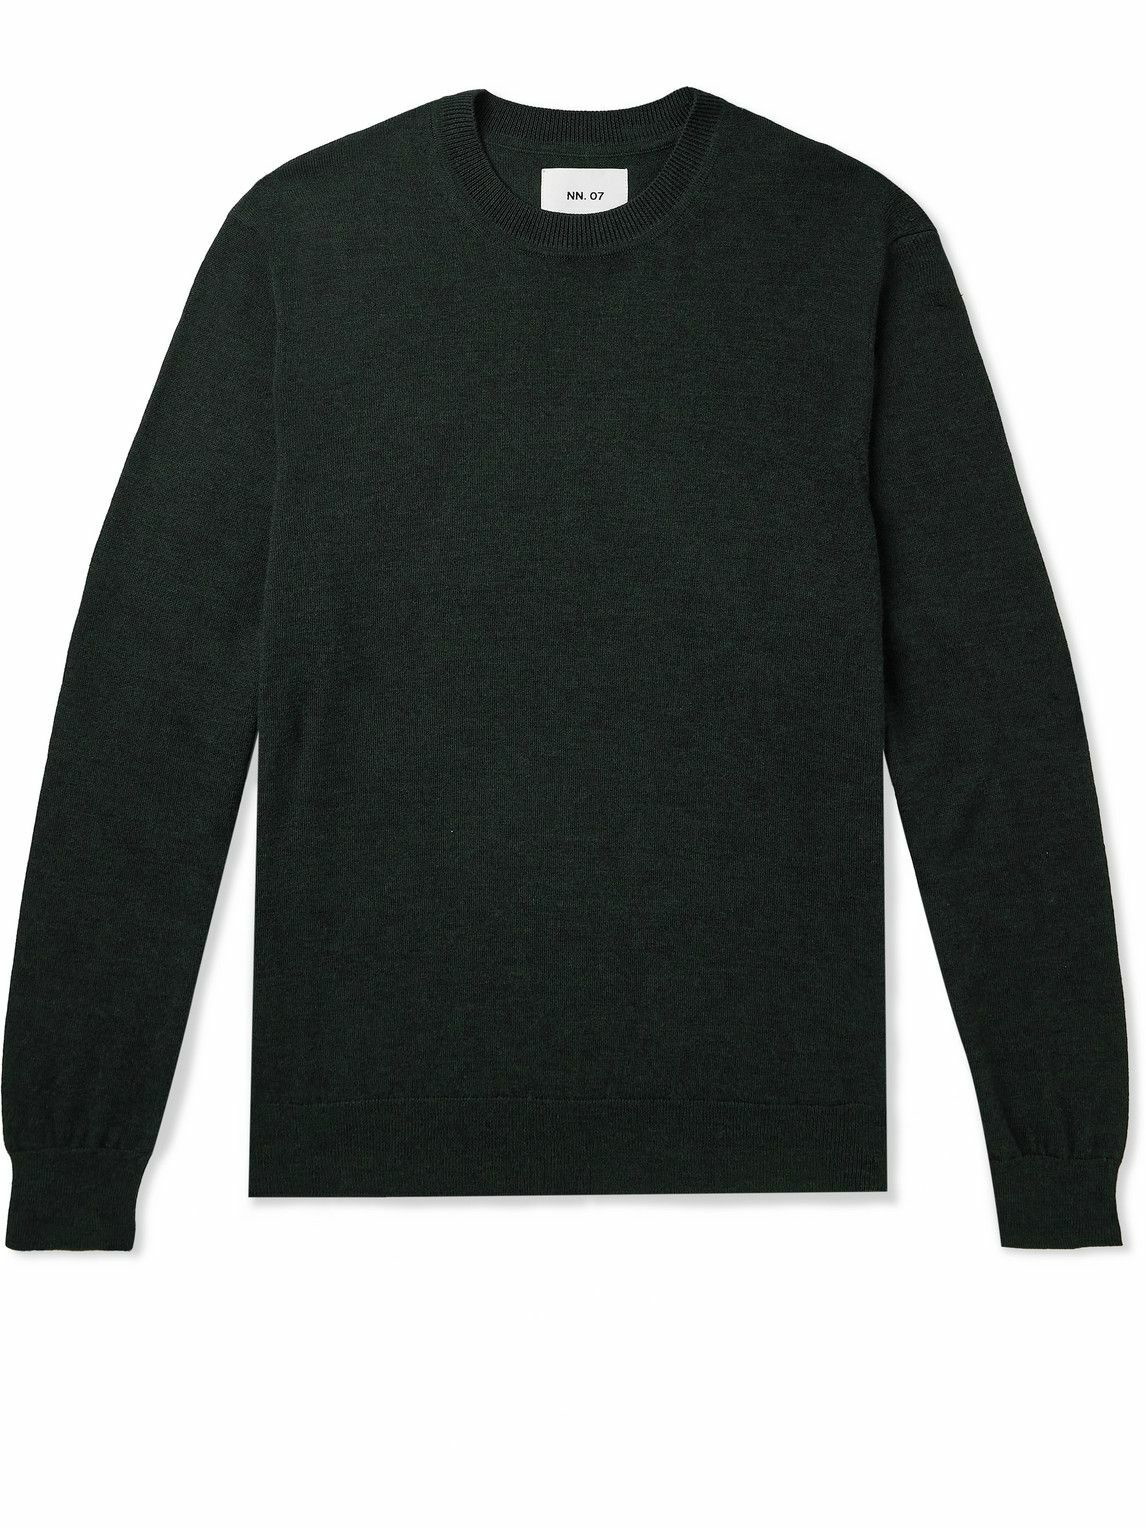 NN07 - Ted 6605 Wool Sweater - Green NN07